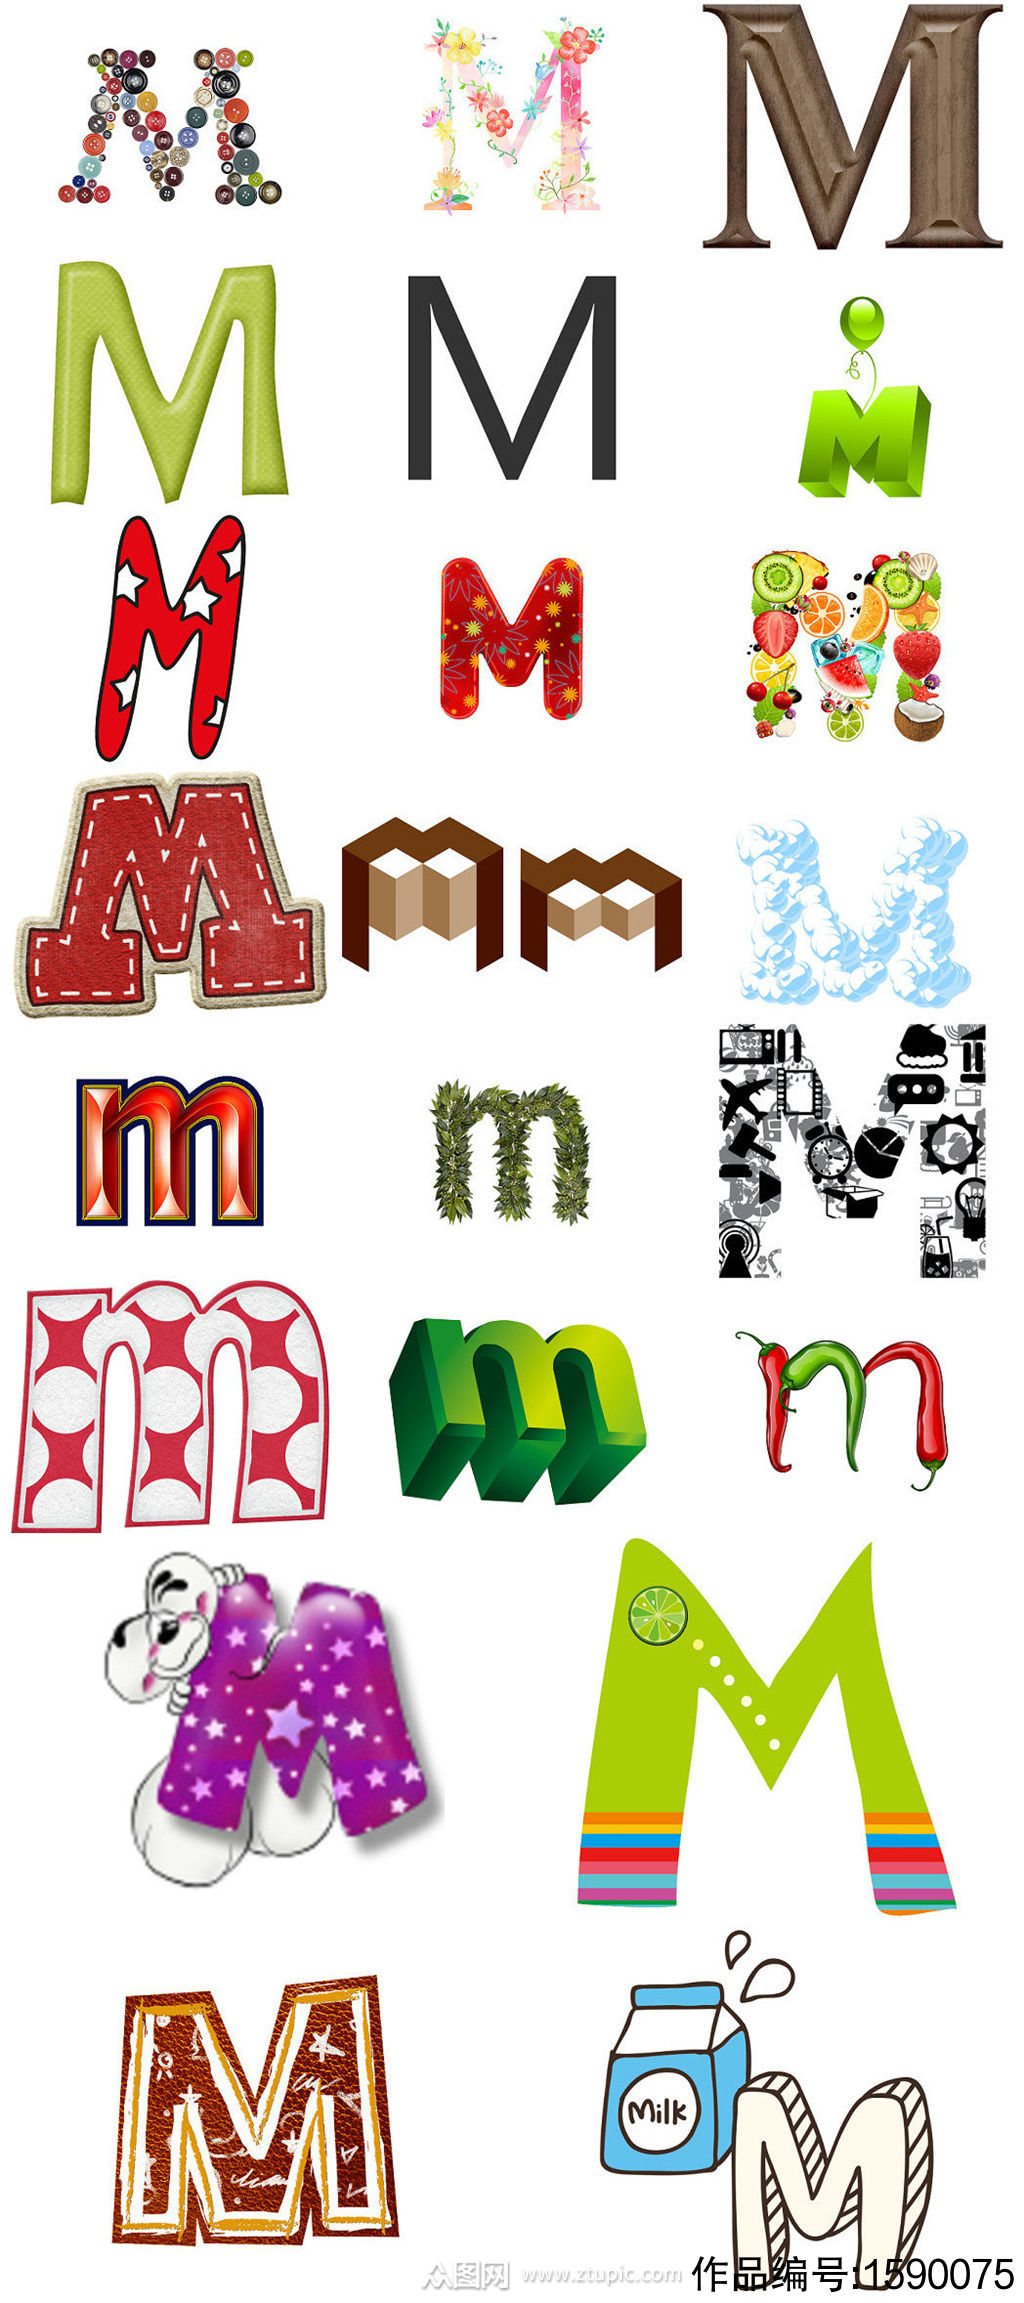 英文字母m形状字体设计模版